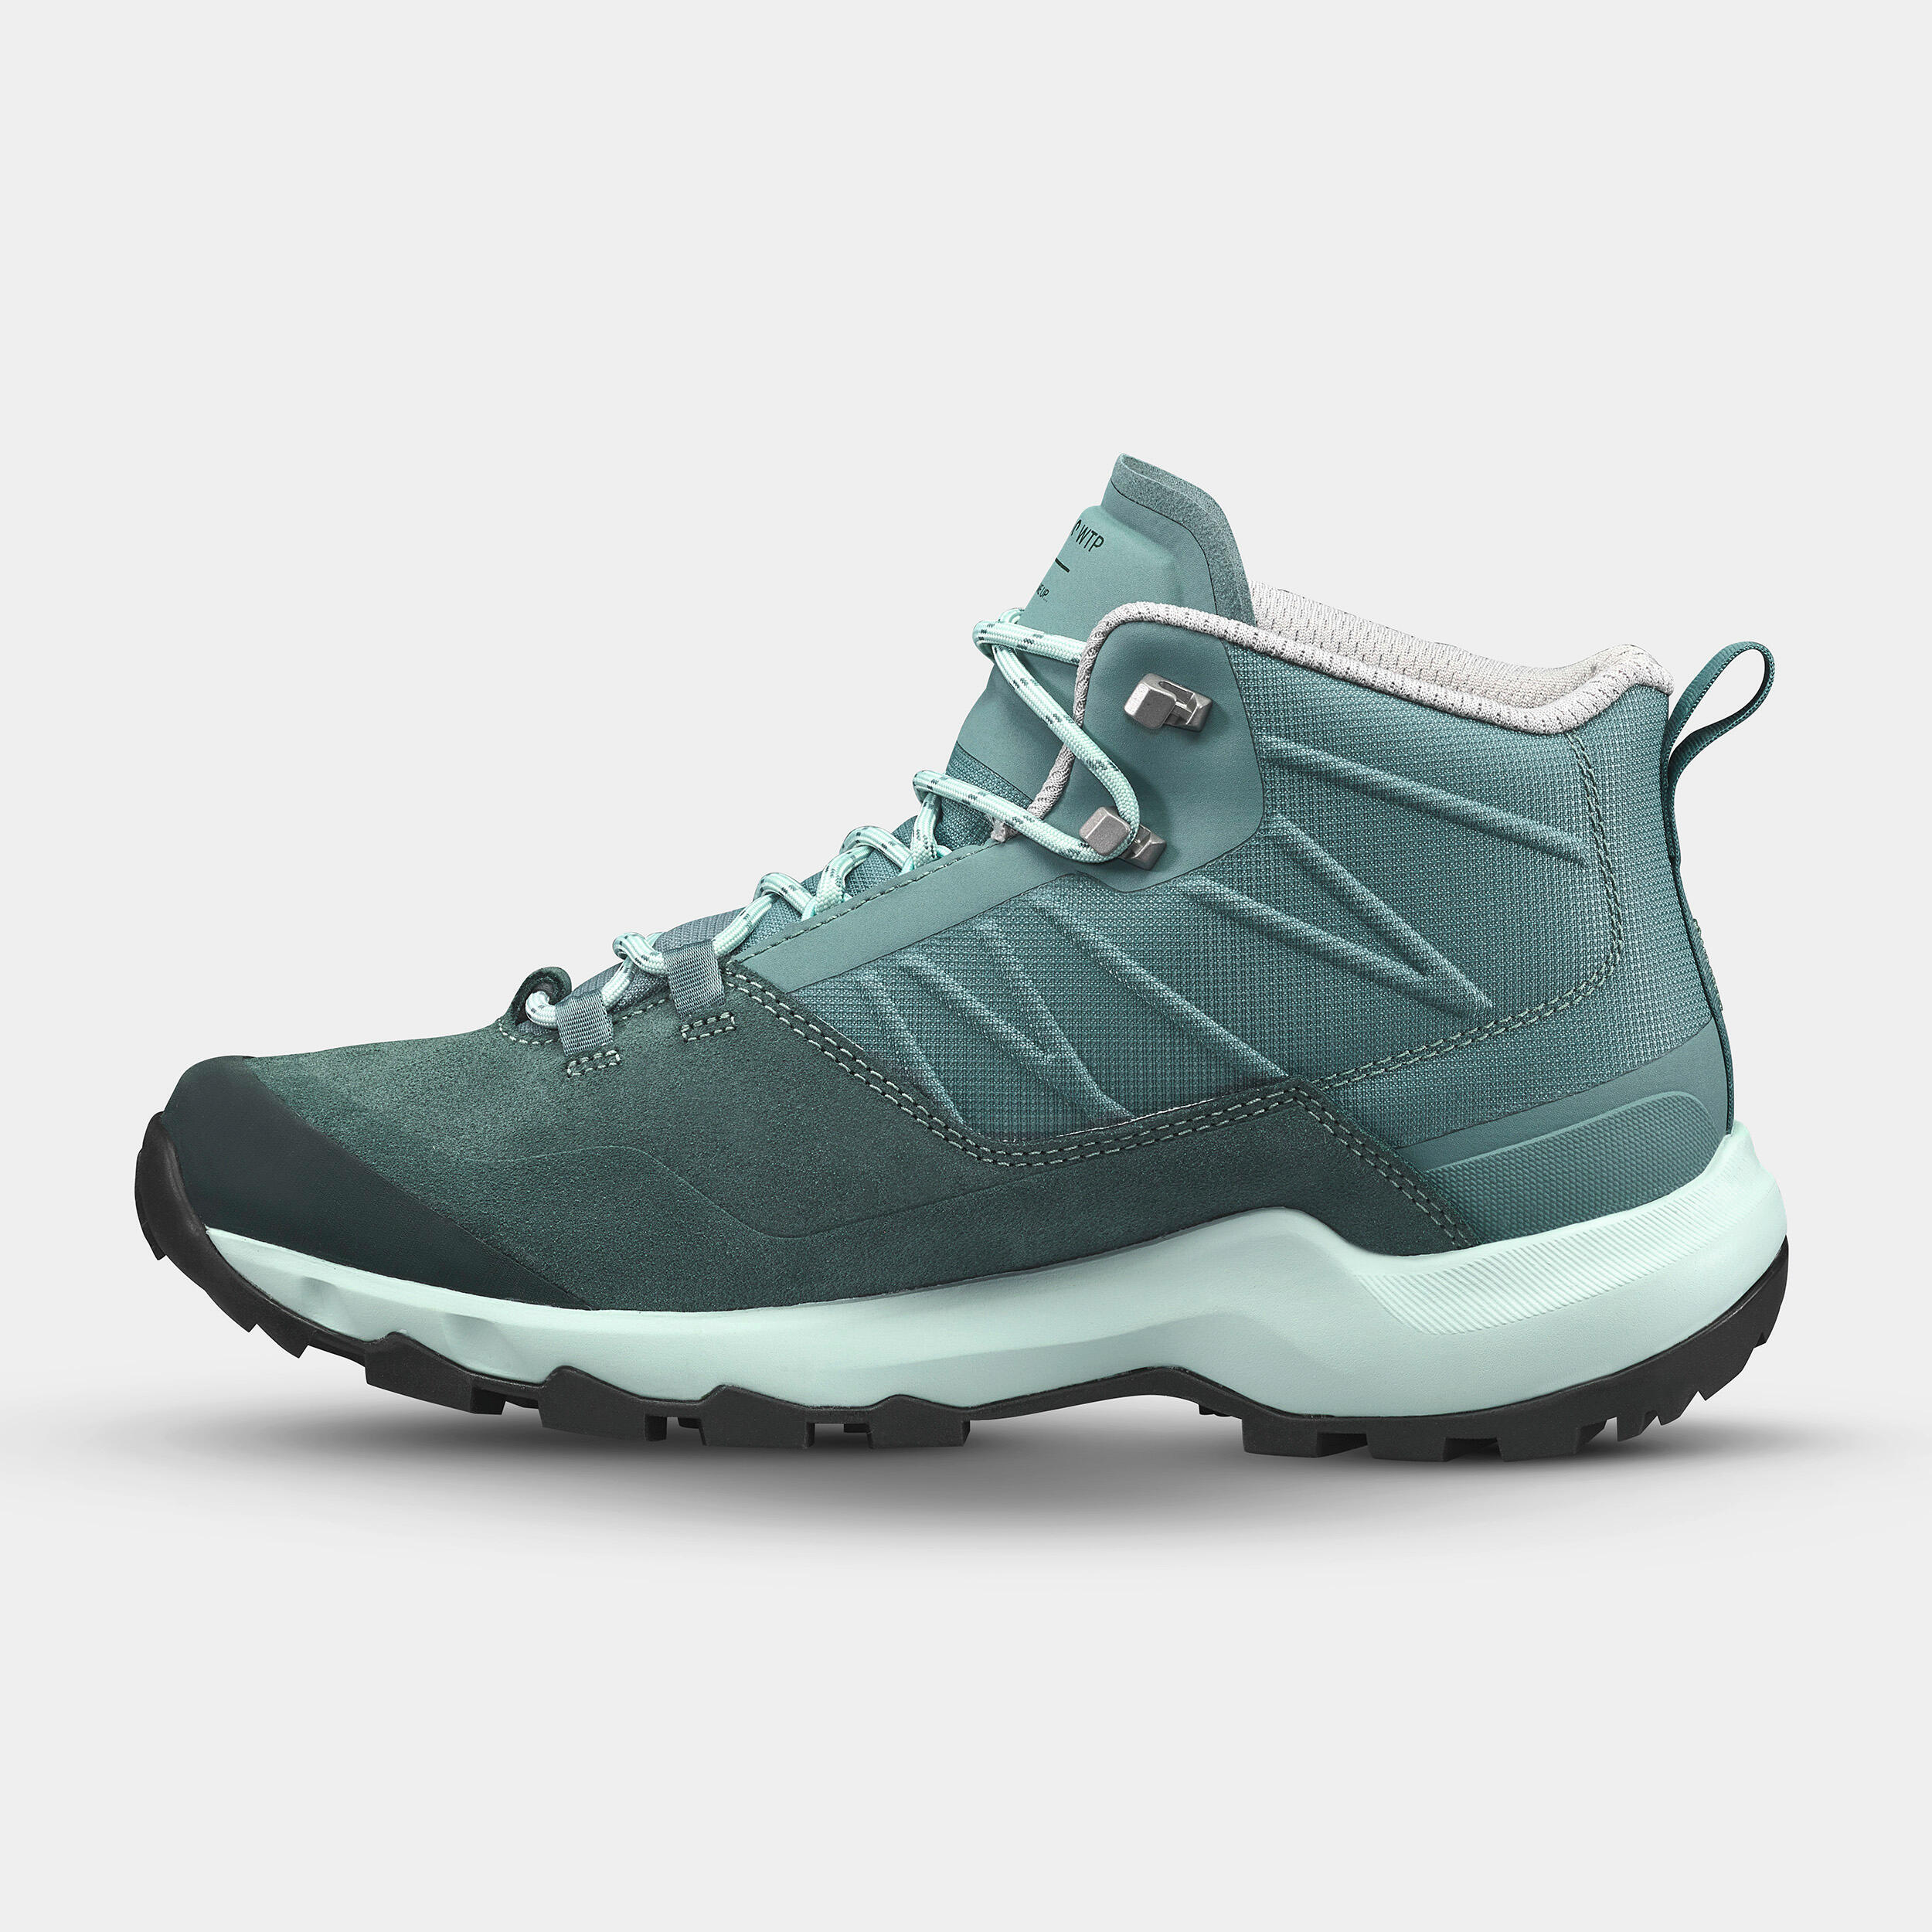 Women’s waterproof mountain walking boots - MH500 Mid - Green 5/12